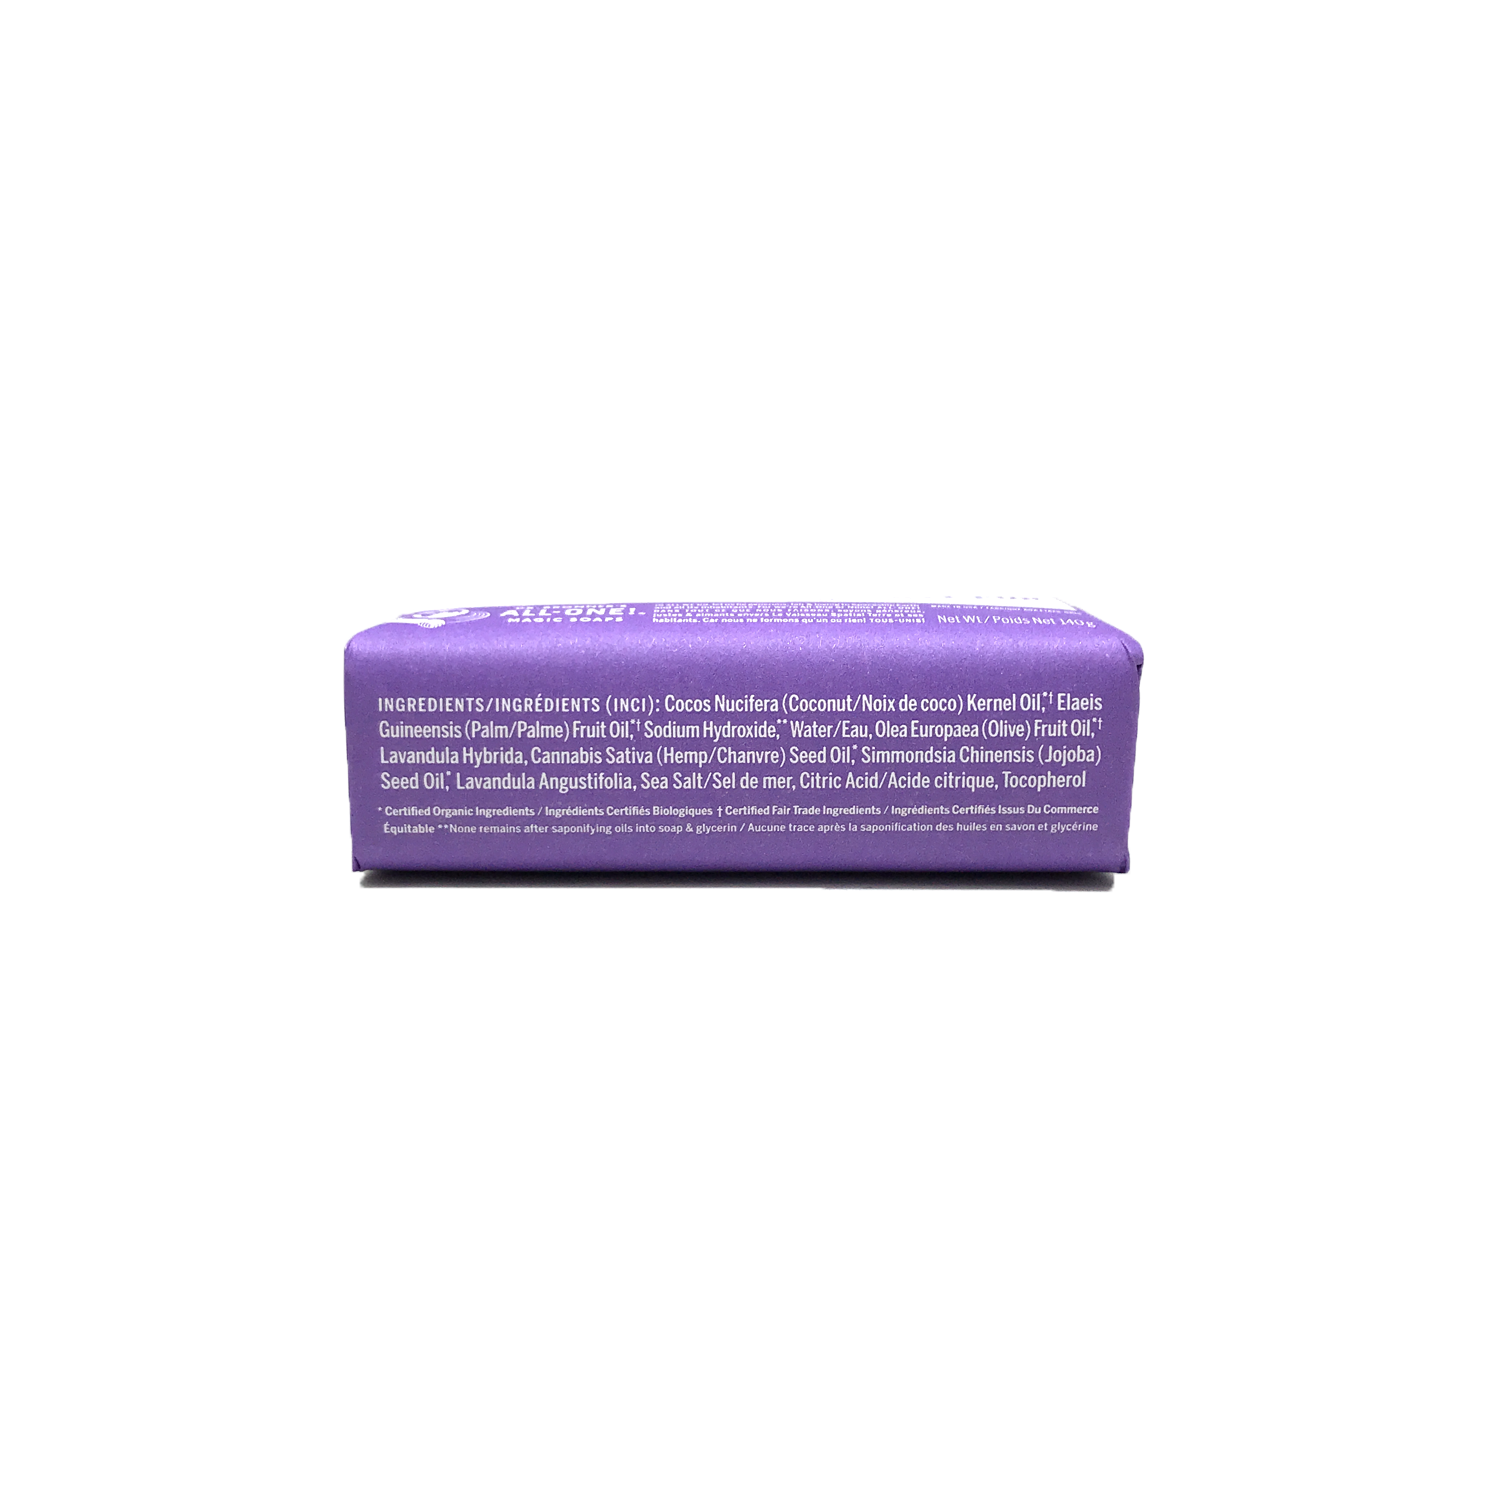 Dr. Bronner’s Organic Lavender Castile Bar Soap 142g